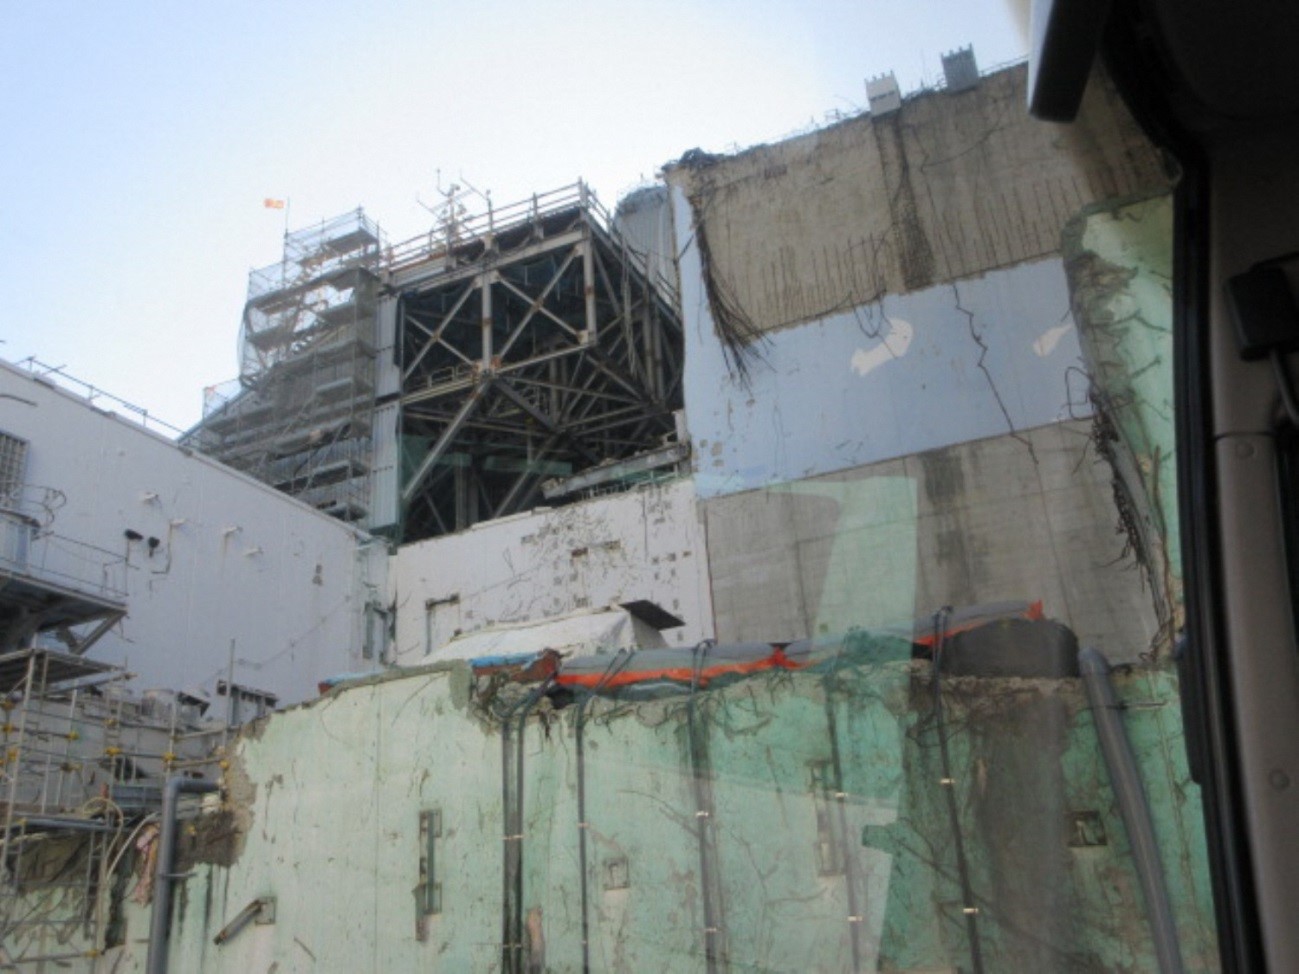 Damage to Reactor 1